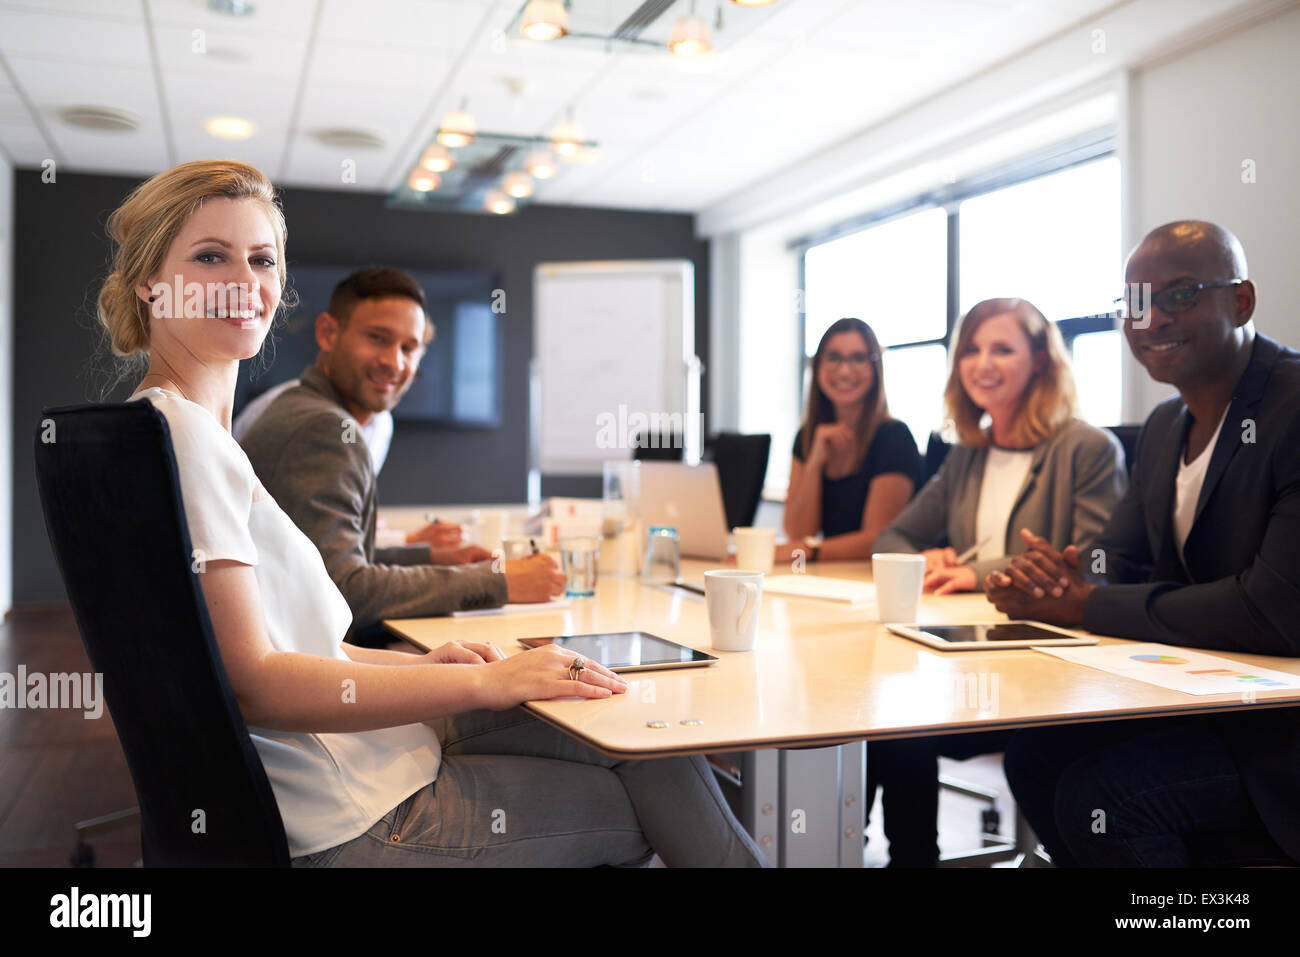 Grupo de jóvenes ejecutivos sonriendo a la cámara durante una reunión de trabajo. Foto de stock